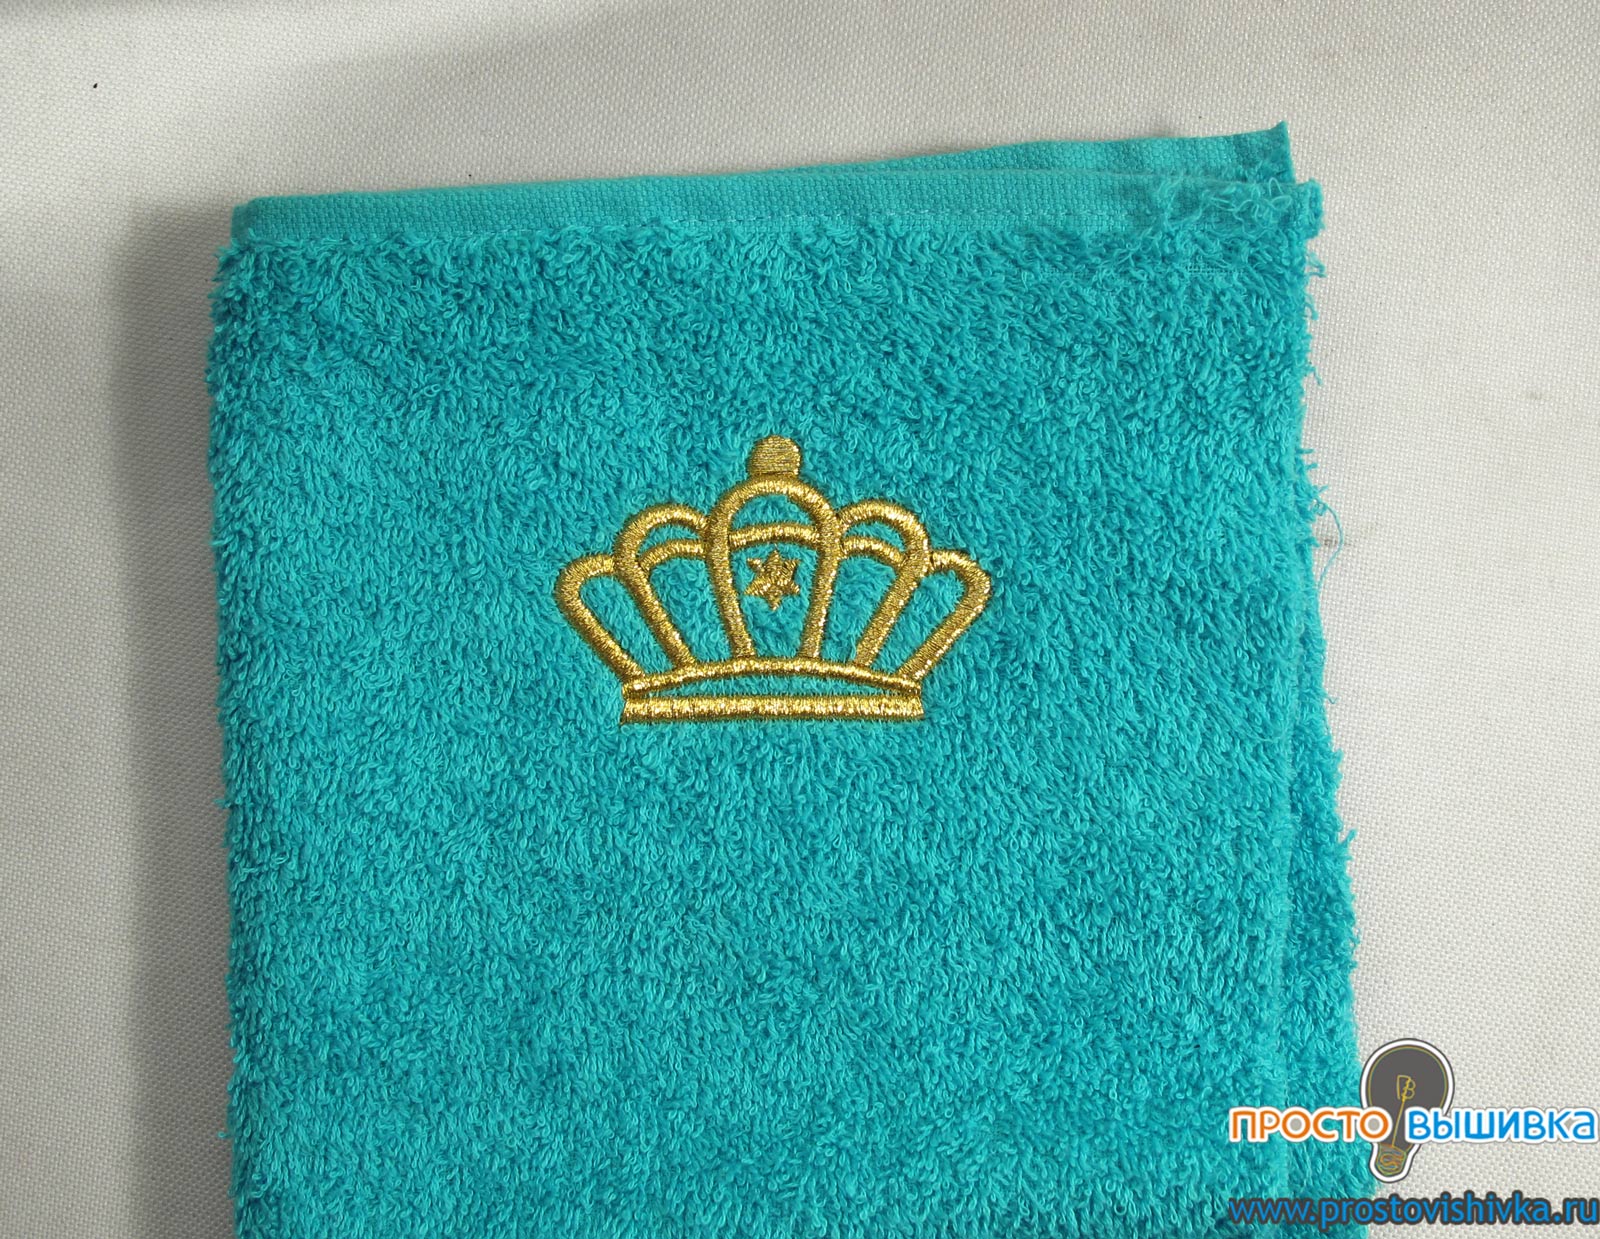 Вышивка золотом короны на полотенце